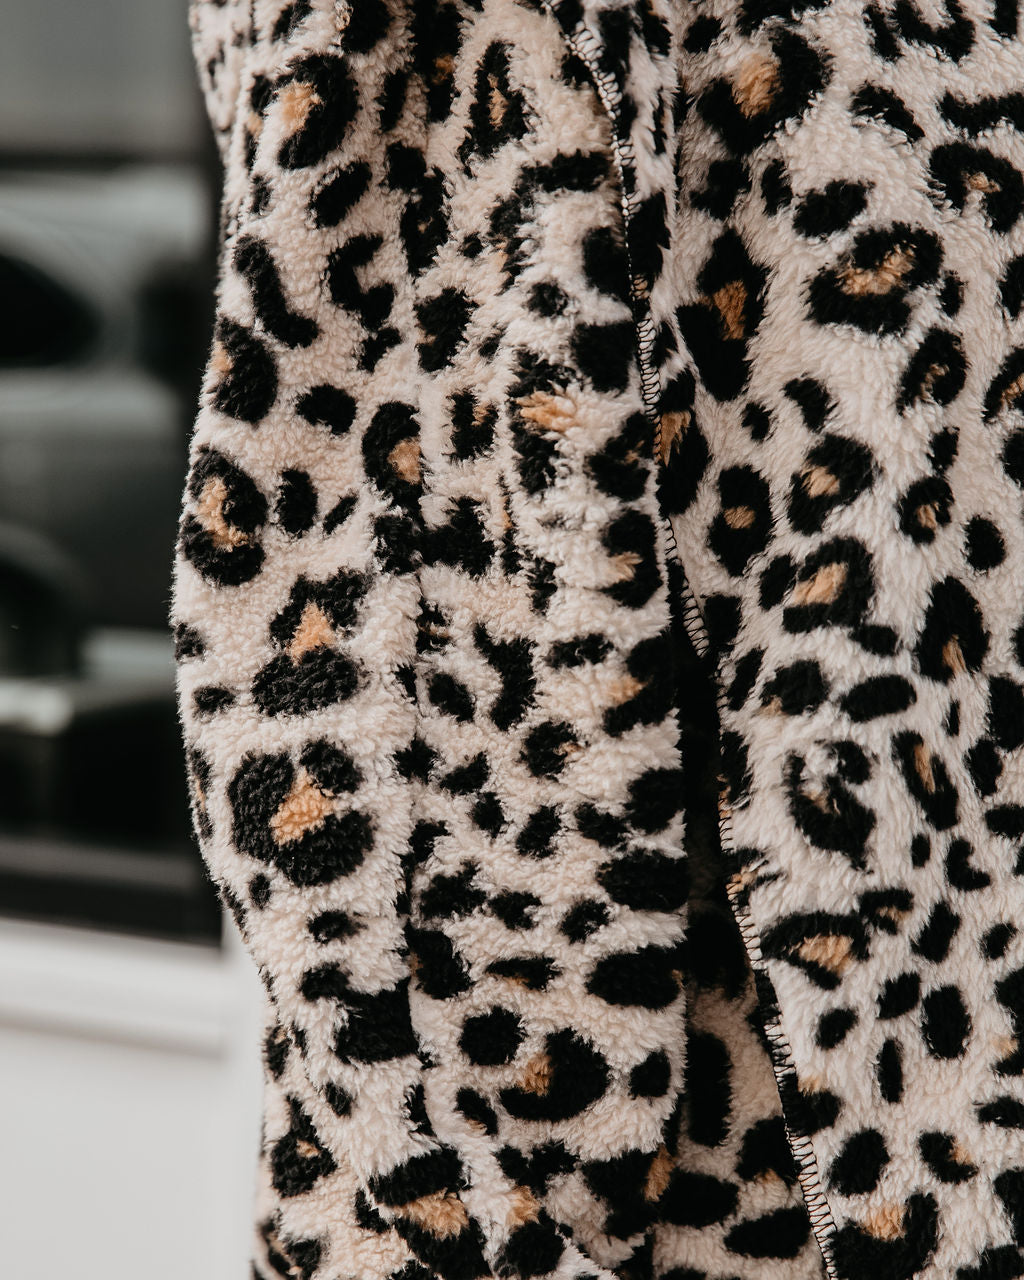 Nine Lives Pocketed Leopard Cardigan Ins Street